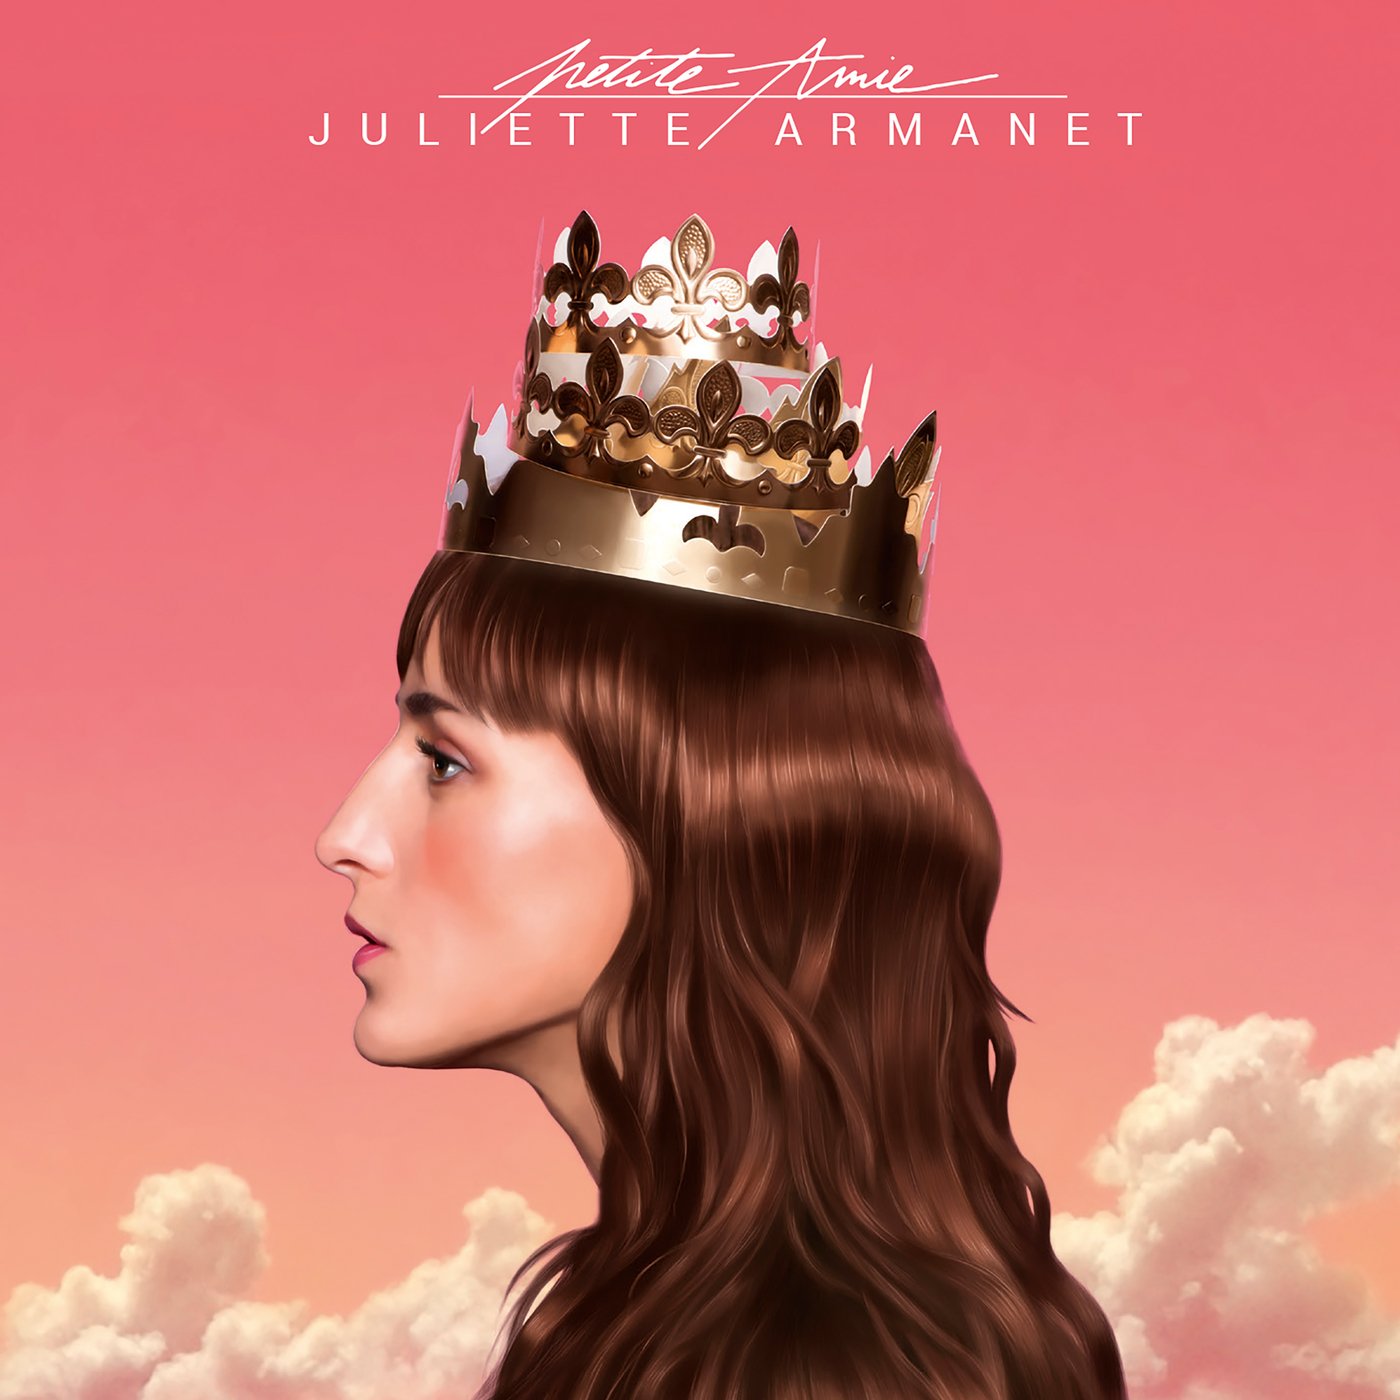 Juliette Armanet - Petite Amie (Edition Délice) (2018) [FLAC 24bit/44,1kHz]